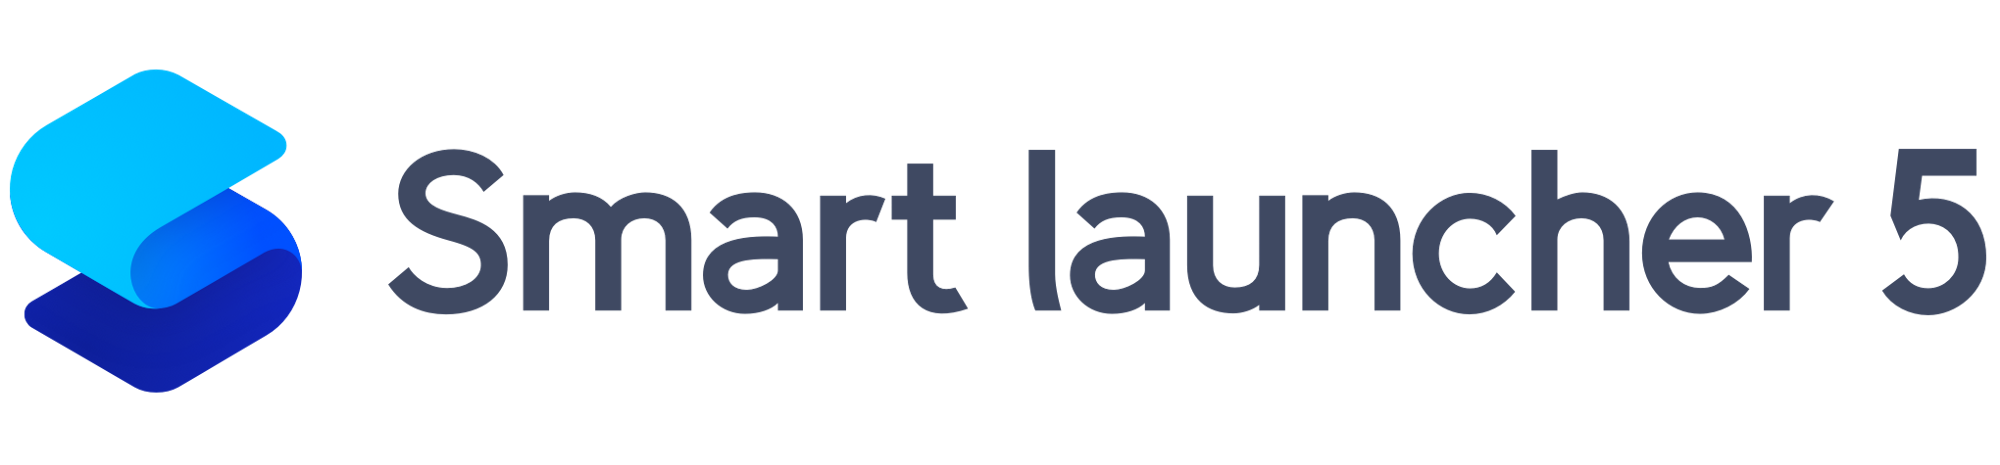 smart launcher 5 -- deskworldwide.com